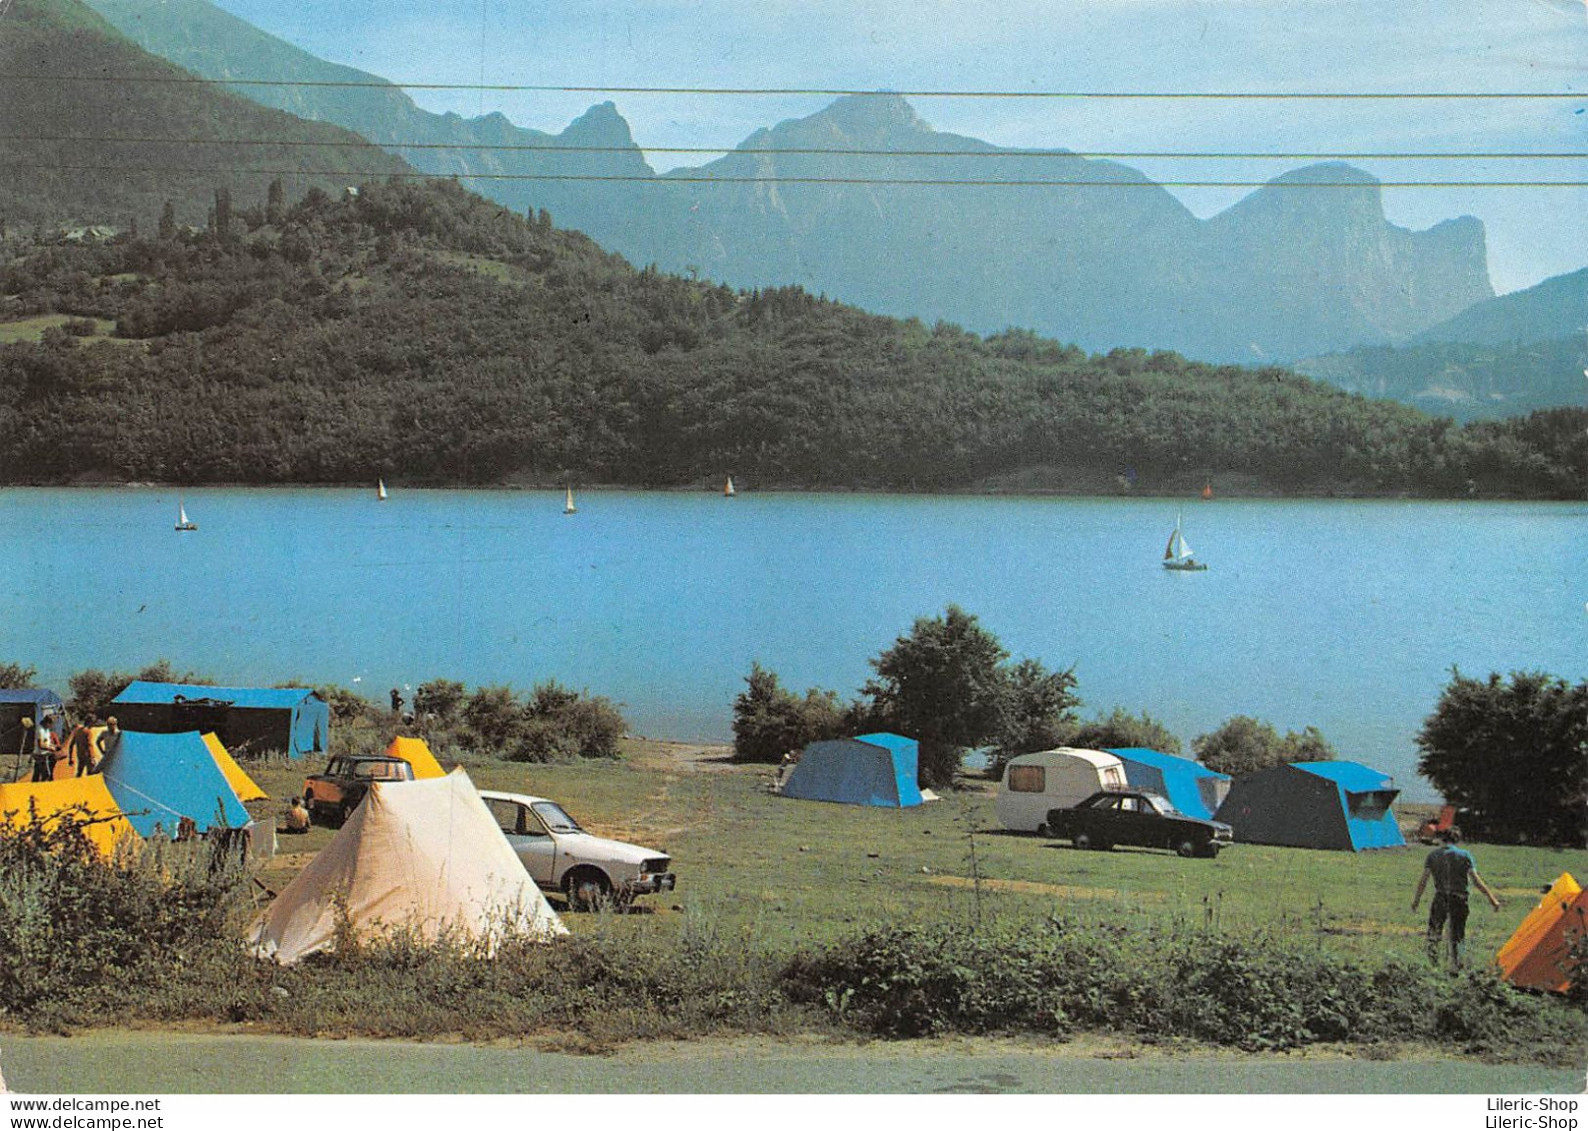 [38] CORPS- Le Camping, Le Lac Sautet Et La Chaine Du Dévoluy - Automobiles Opel Kadett R12 CPSM GF  ( ͡◕ ͜ʖ ͡◕) ♦ - Corps